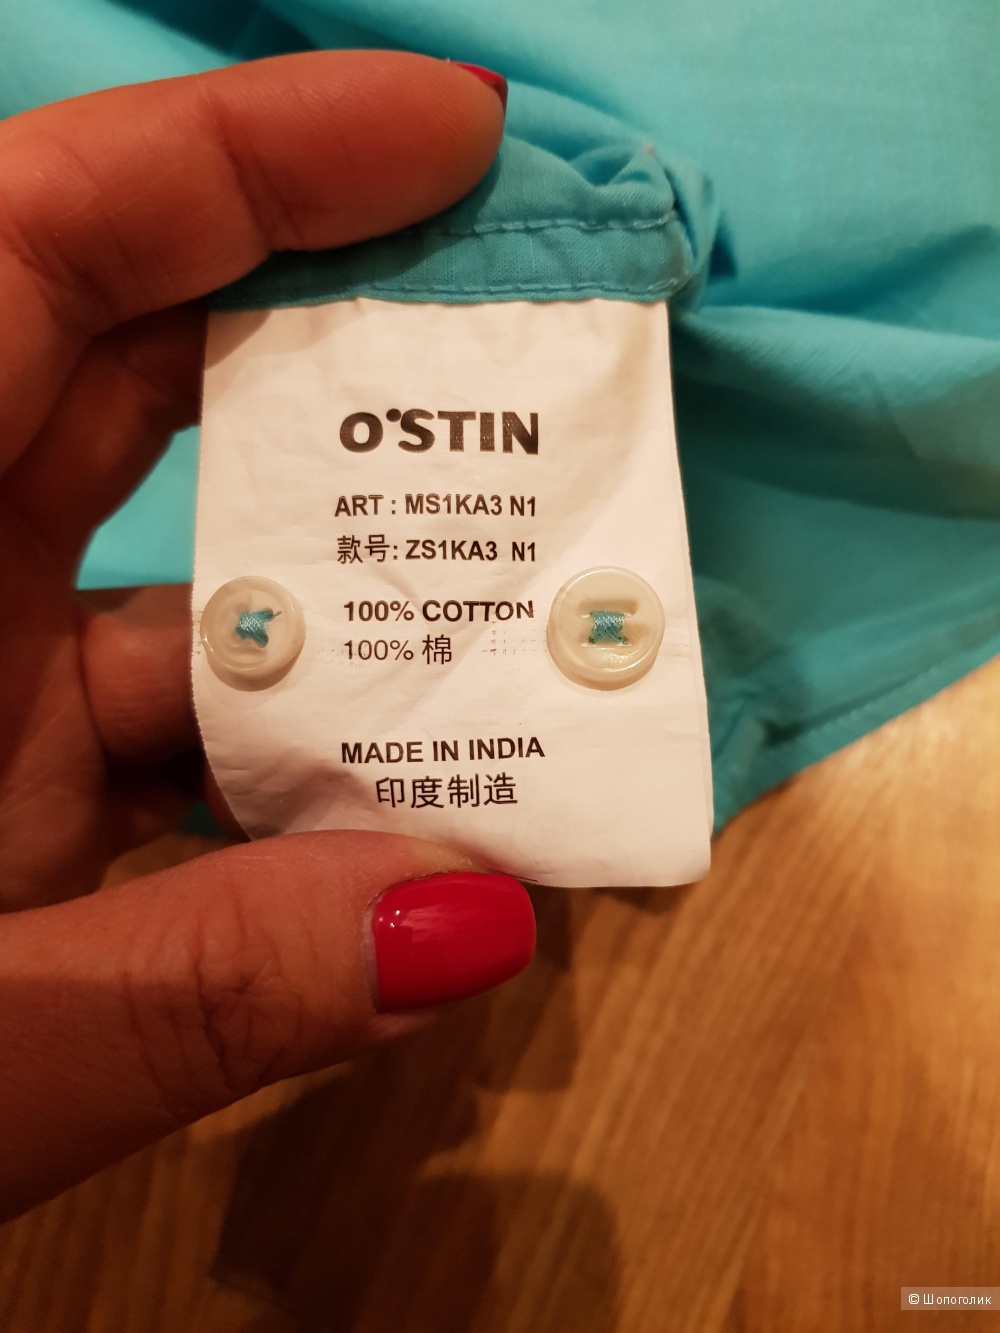 Мужская рубашка OSTIN 54-56 размер